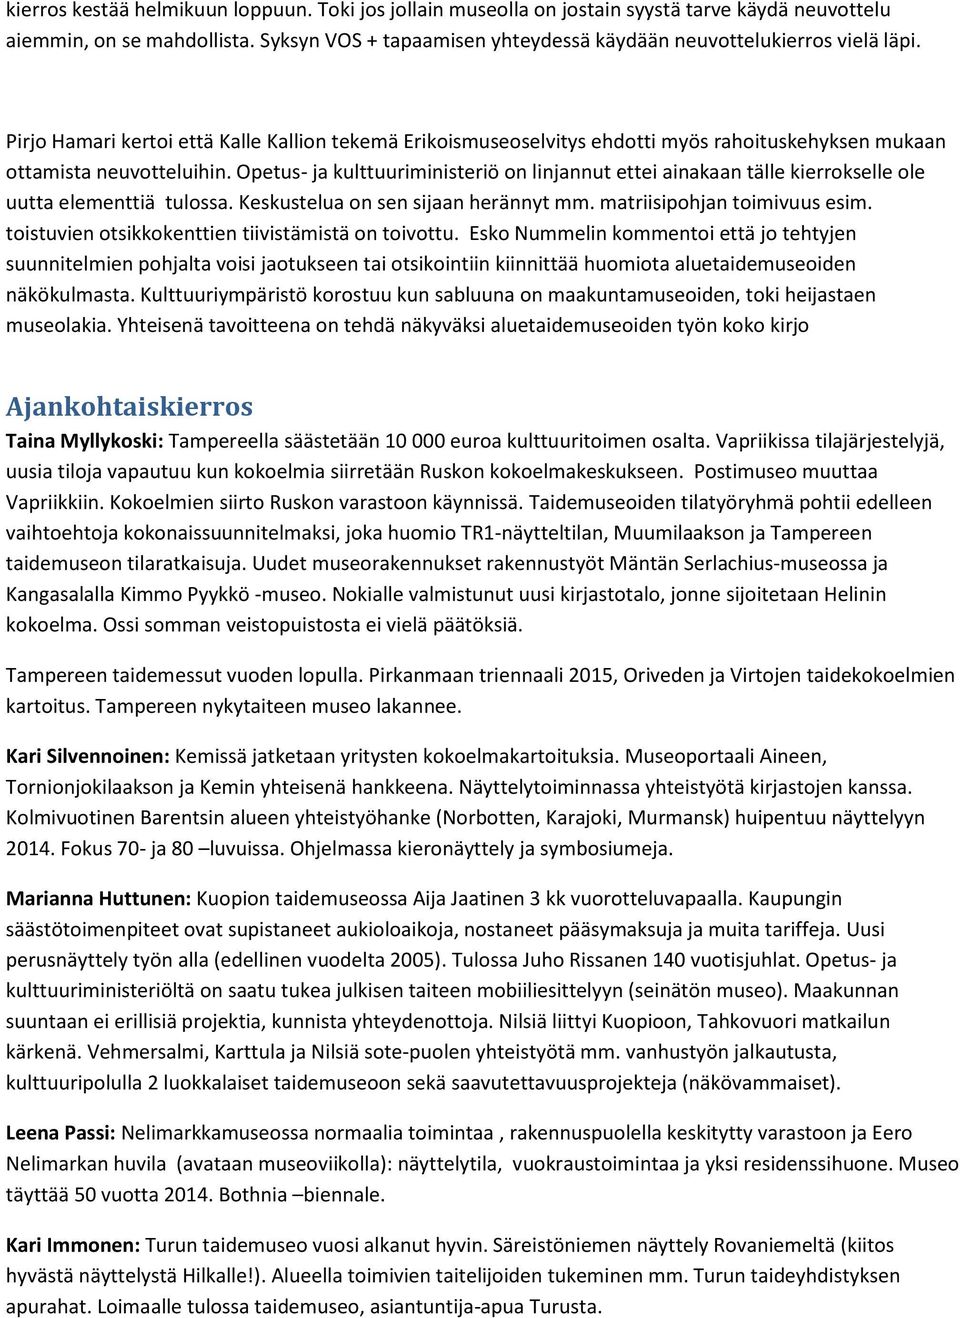 Pirjo Hamari kertoi että Kalle Kallion tekemä Erikoismuseoselvitys ehdotti myös rahoituskehyksen mukaan ottamista neuvotteluihin.